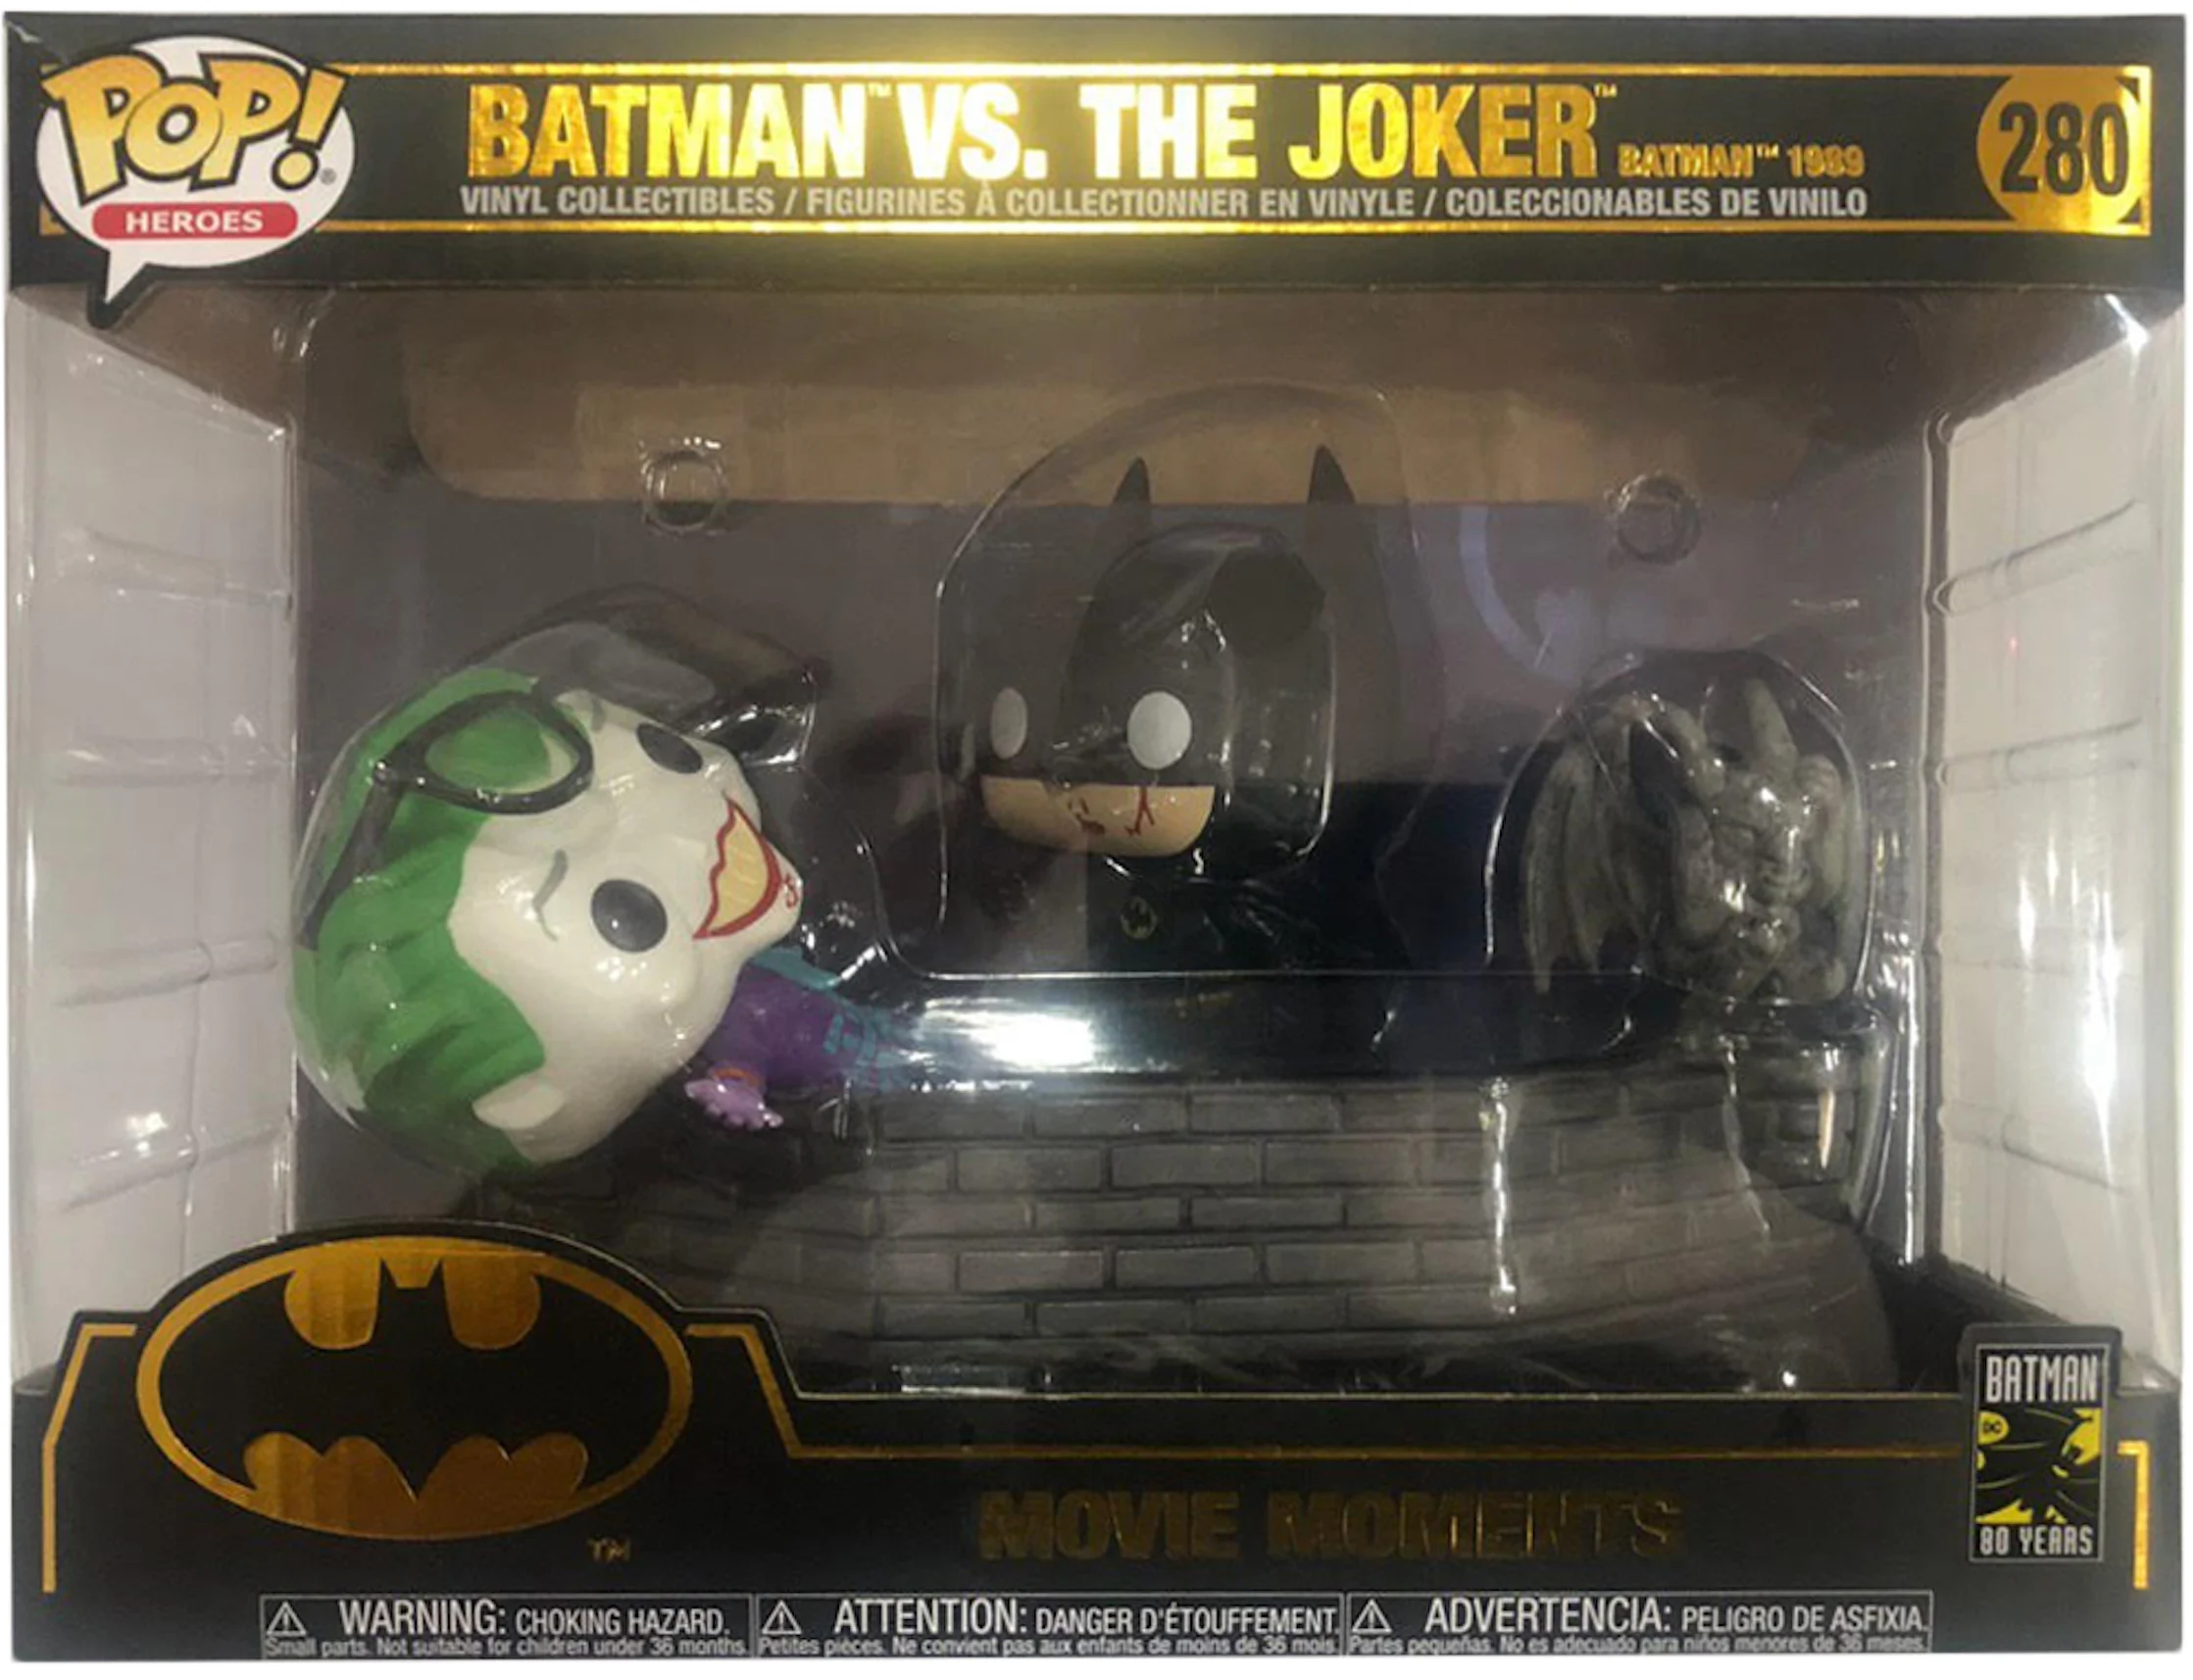 Funko Pop! Heroes: Batman 1989 - Joker with Hat Vinyl Figure